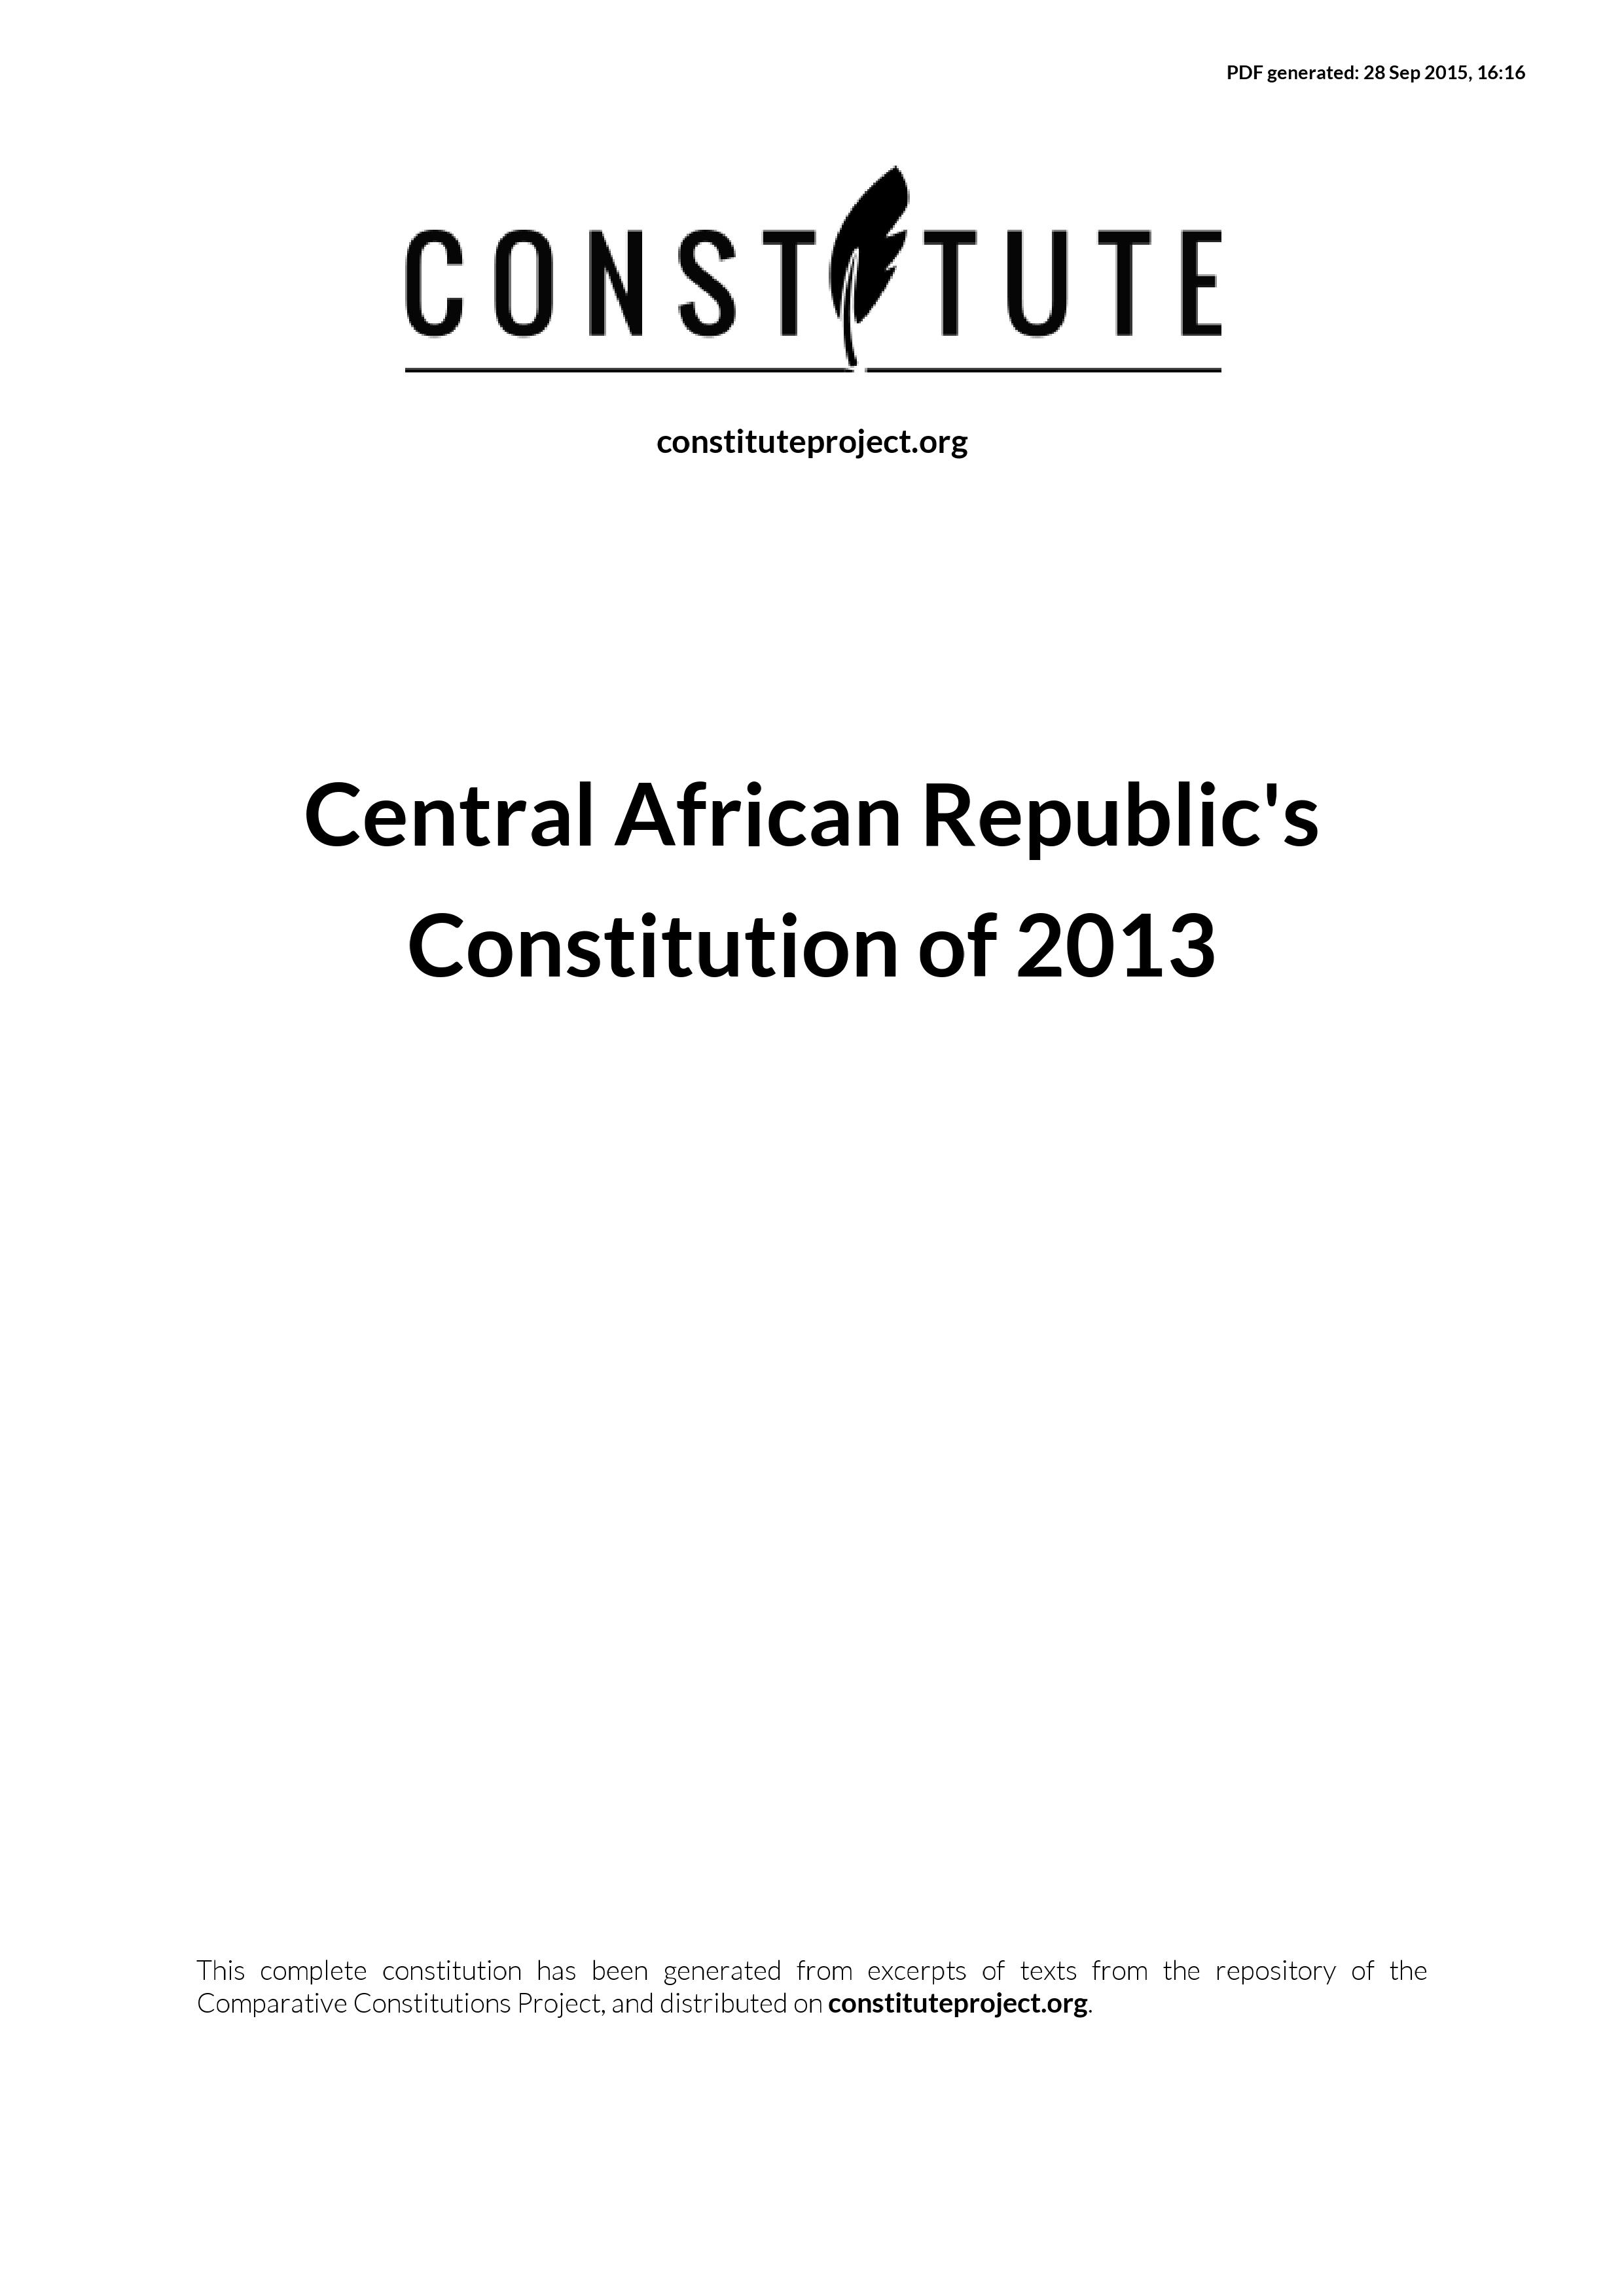 Interim Constitution - Central African Republic (2013-present)